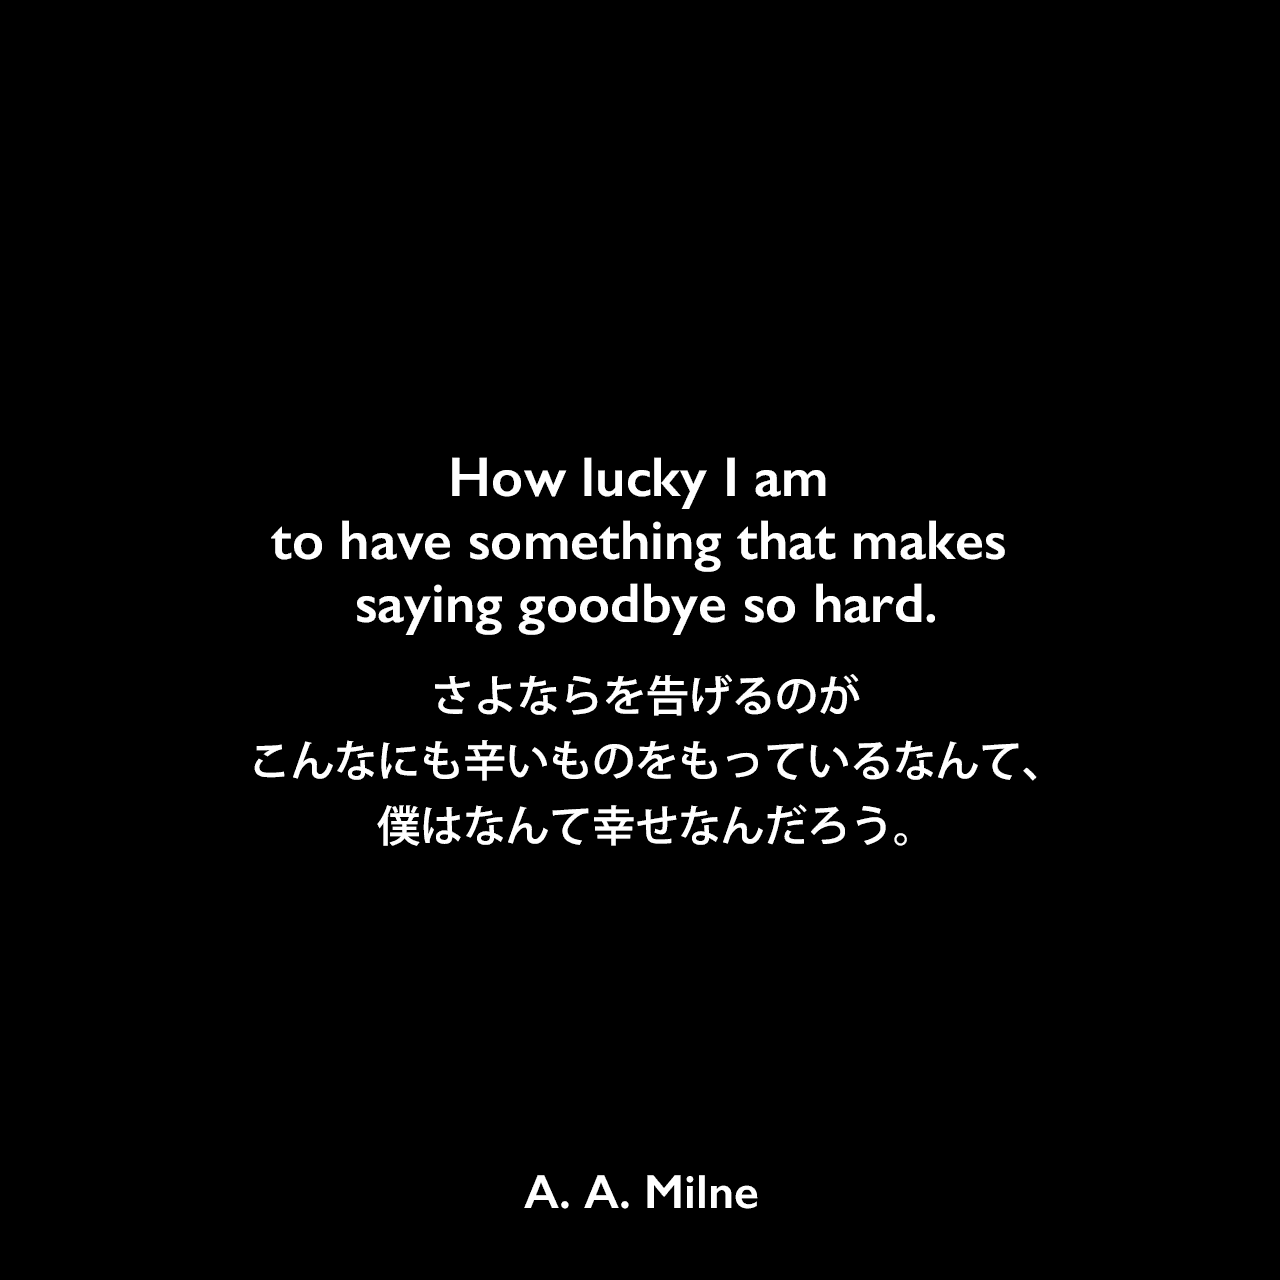 How lucky I am to have something that makes saying goodbye so hard.さよならを告げるのがこんなにも辛いものをもっているなんて、僕はなんて幸せなんだろう。A. A. Milne